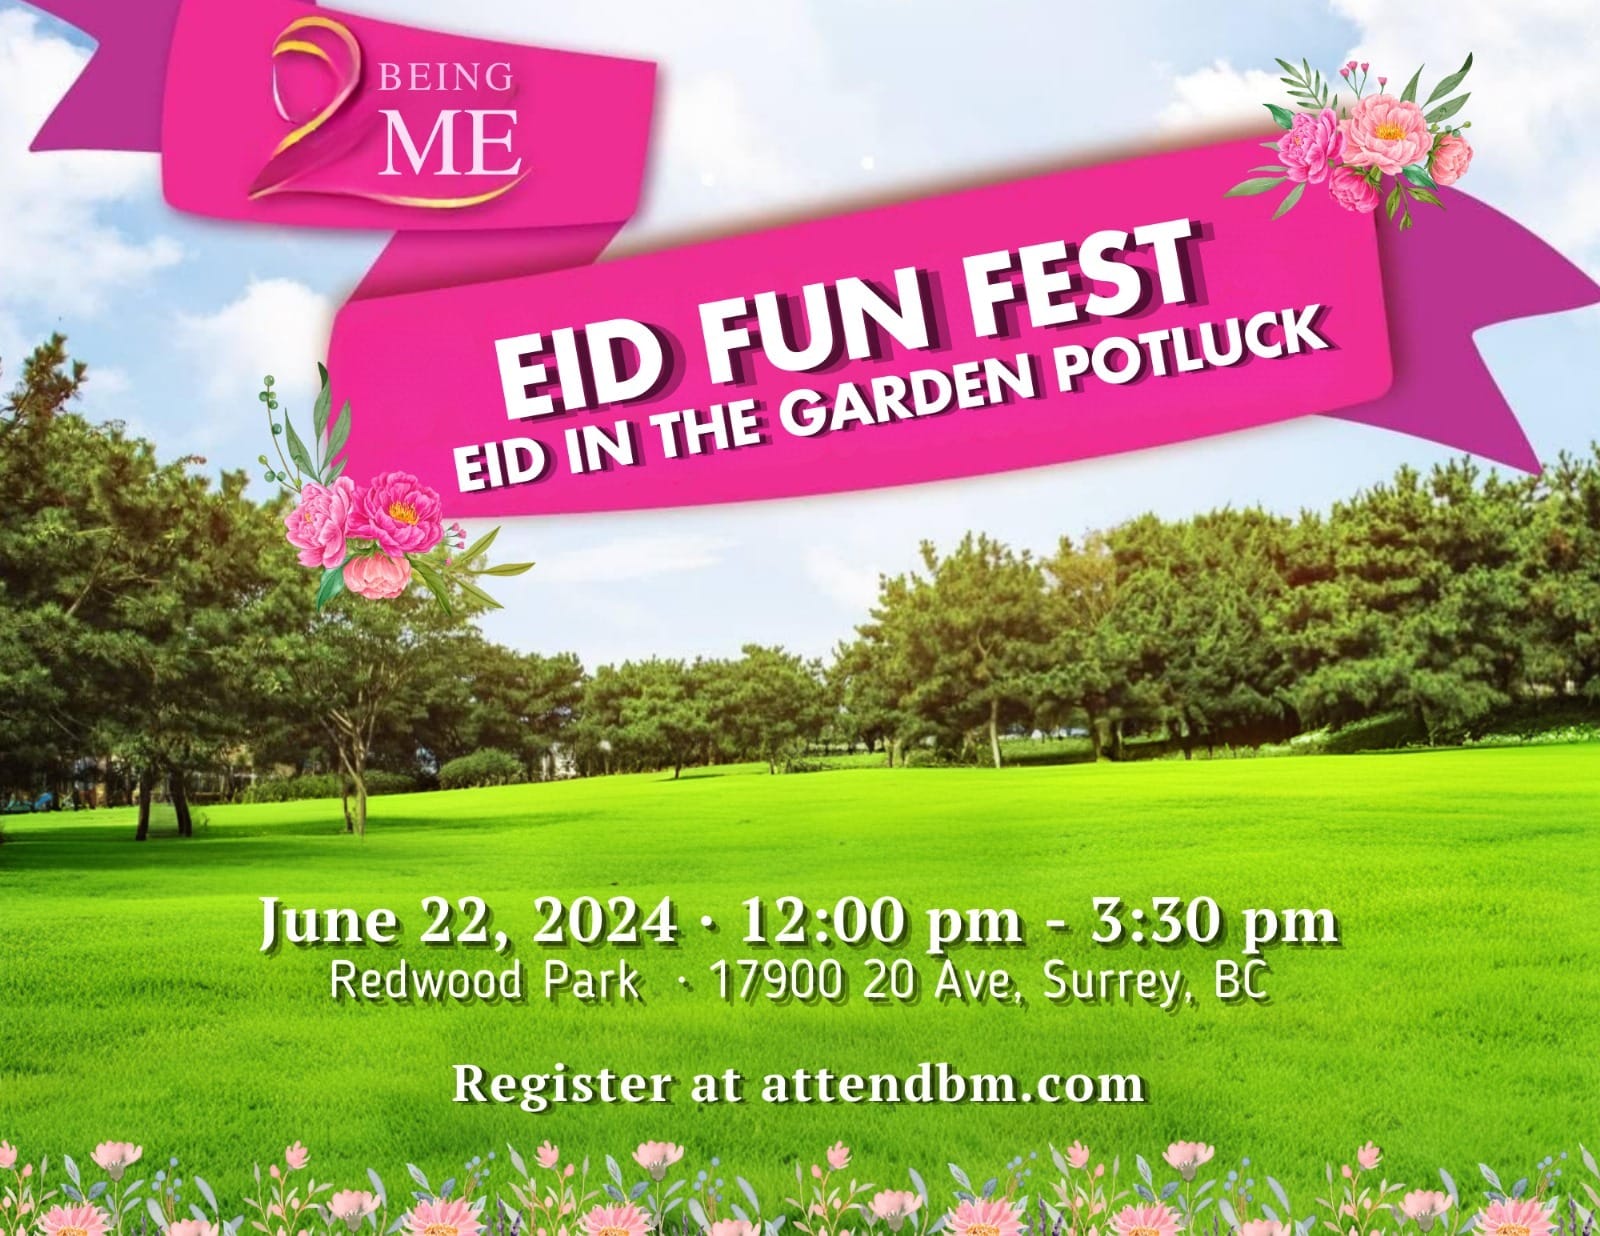 Being ME Meetups: Eid in the Garden Potluck